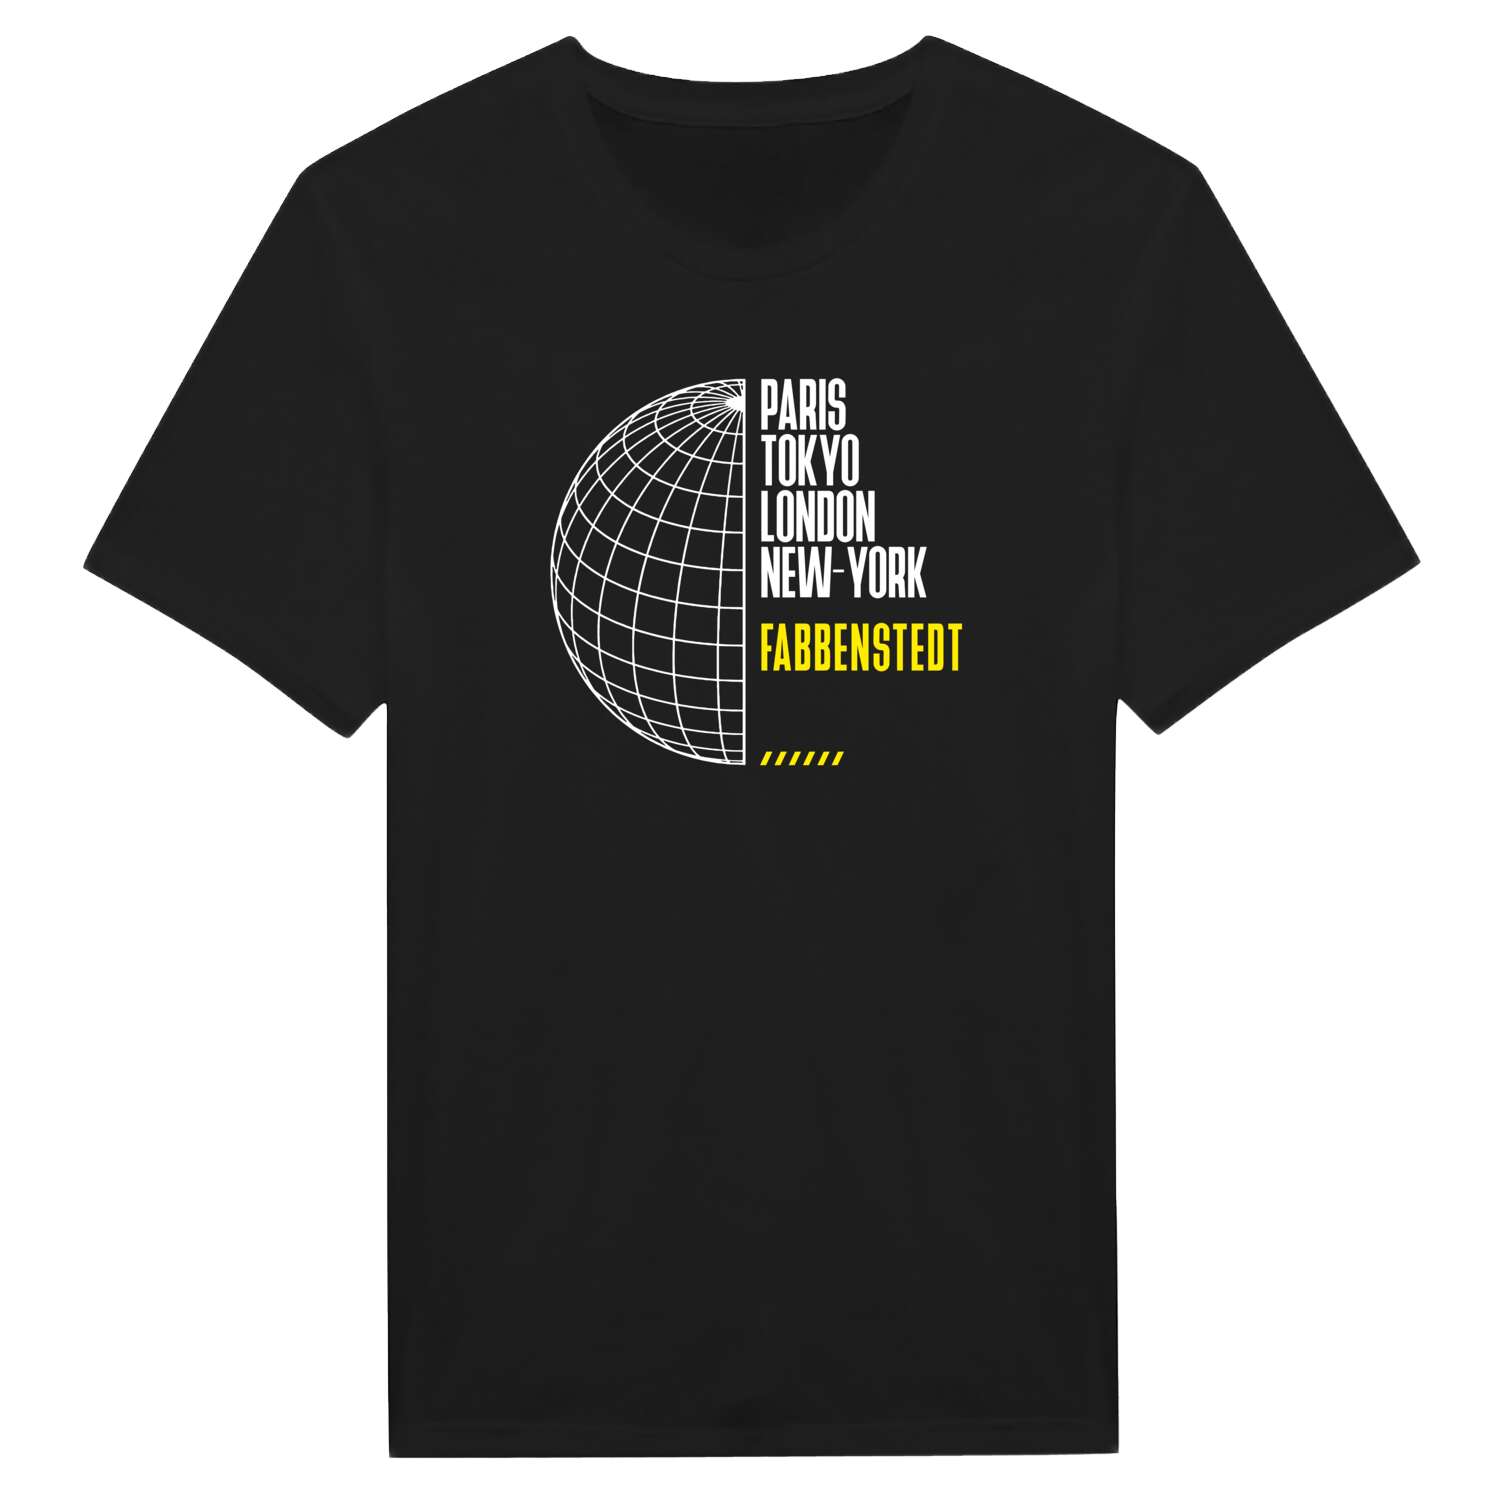 Fabbenstedt T-Shirt »Paris Tokyo London«